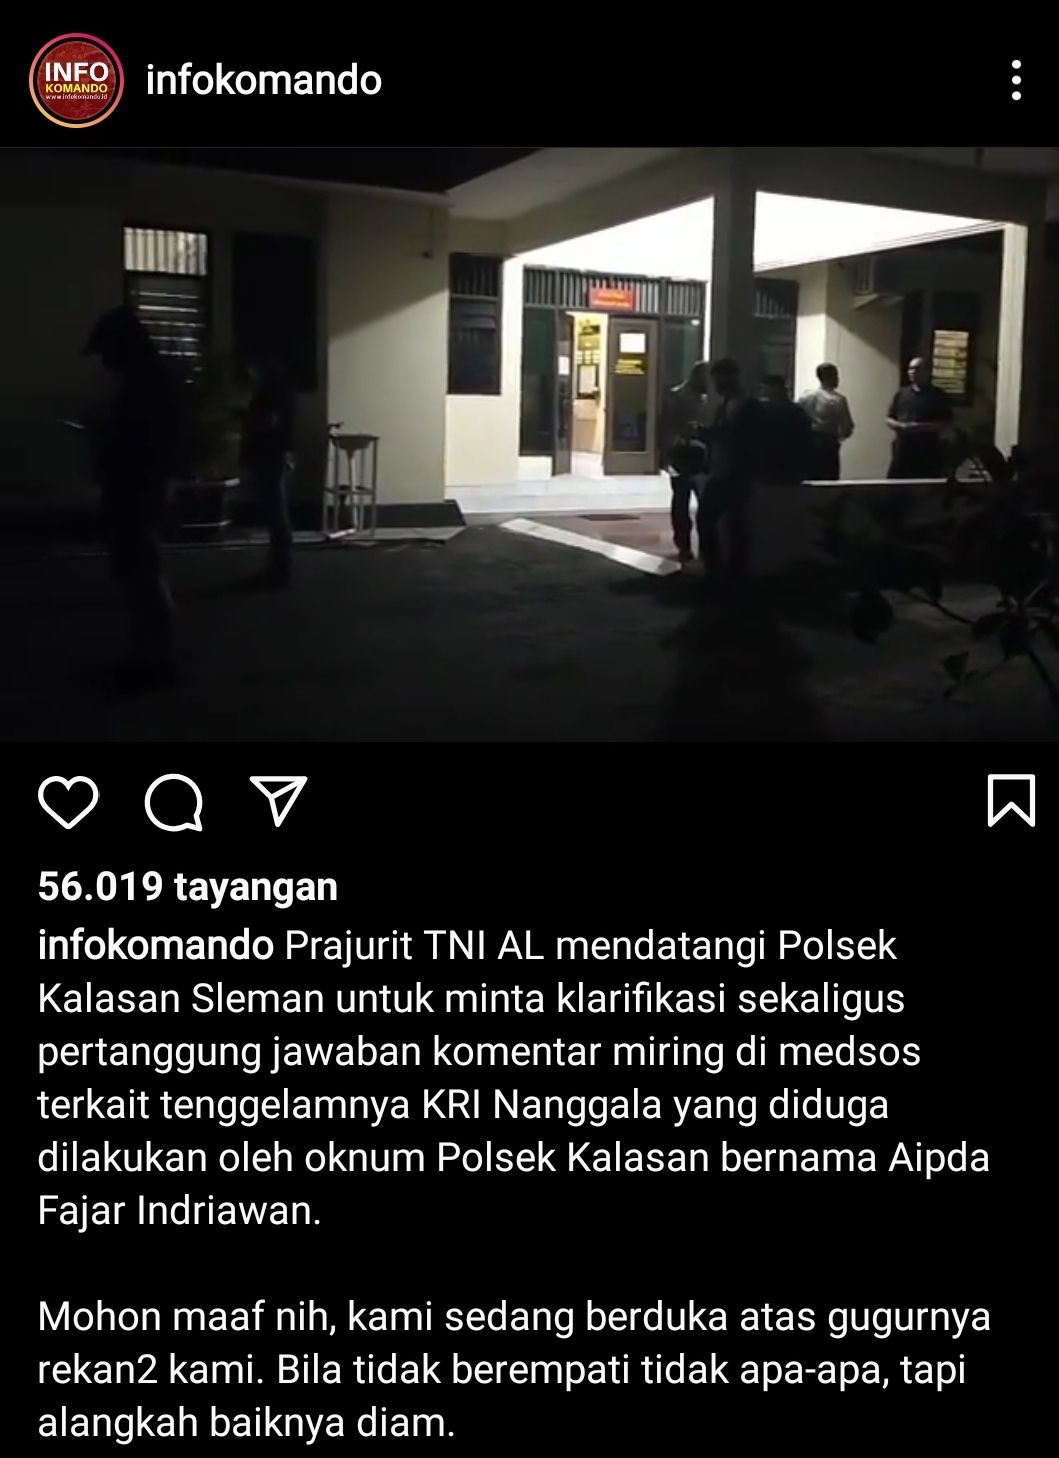 Twngkapan layar sekelompok prajurit TNI AL mendatangi Polsek Kalasan